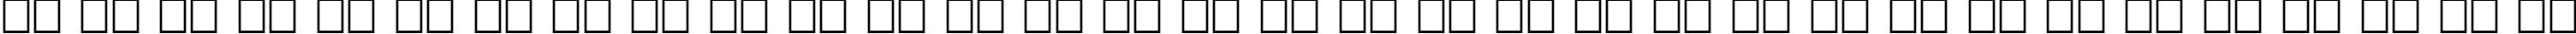 Пример написания русского алфавита шрифтом Baveuse